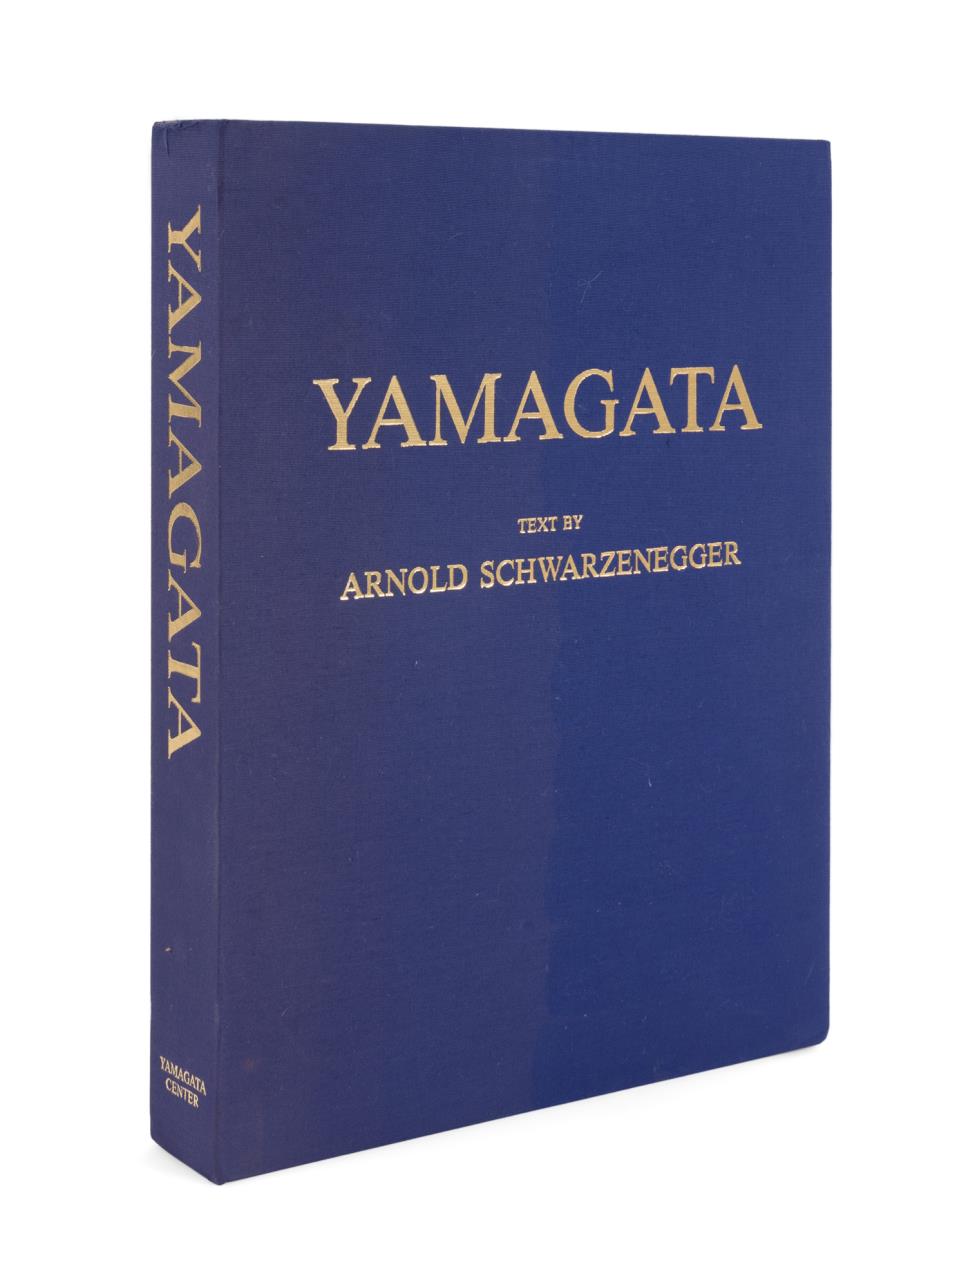 SIGNED "YAMAGATA" ARTIST MONOGRAPH